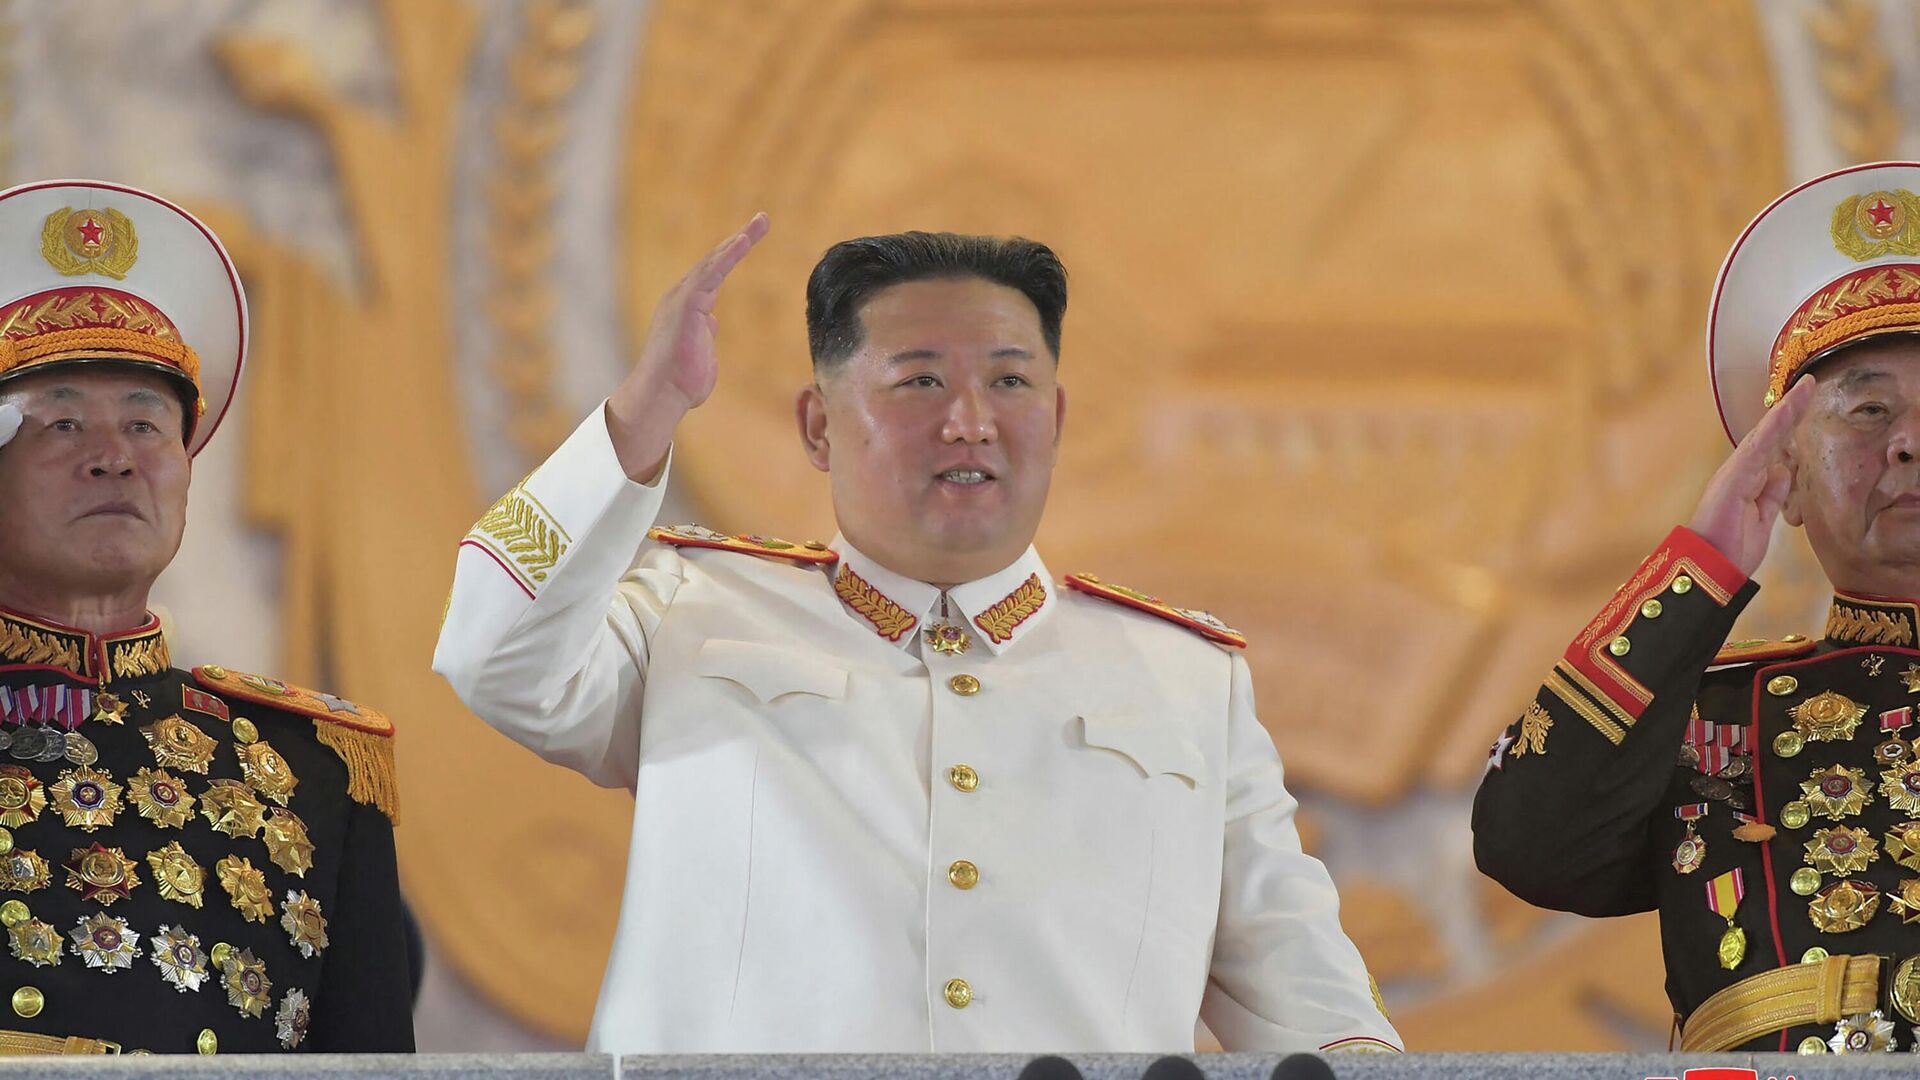 Лидер Северной Кореи Ким Чен Ын на параде в честь годовщины основания Корейской народной армии. 25 апреля 2022 - РИА Новости, 1920, 26.04.2022